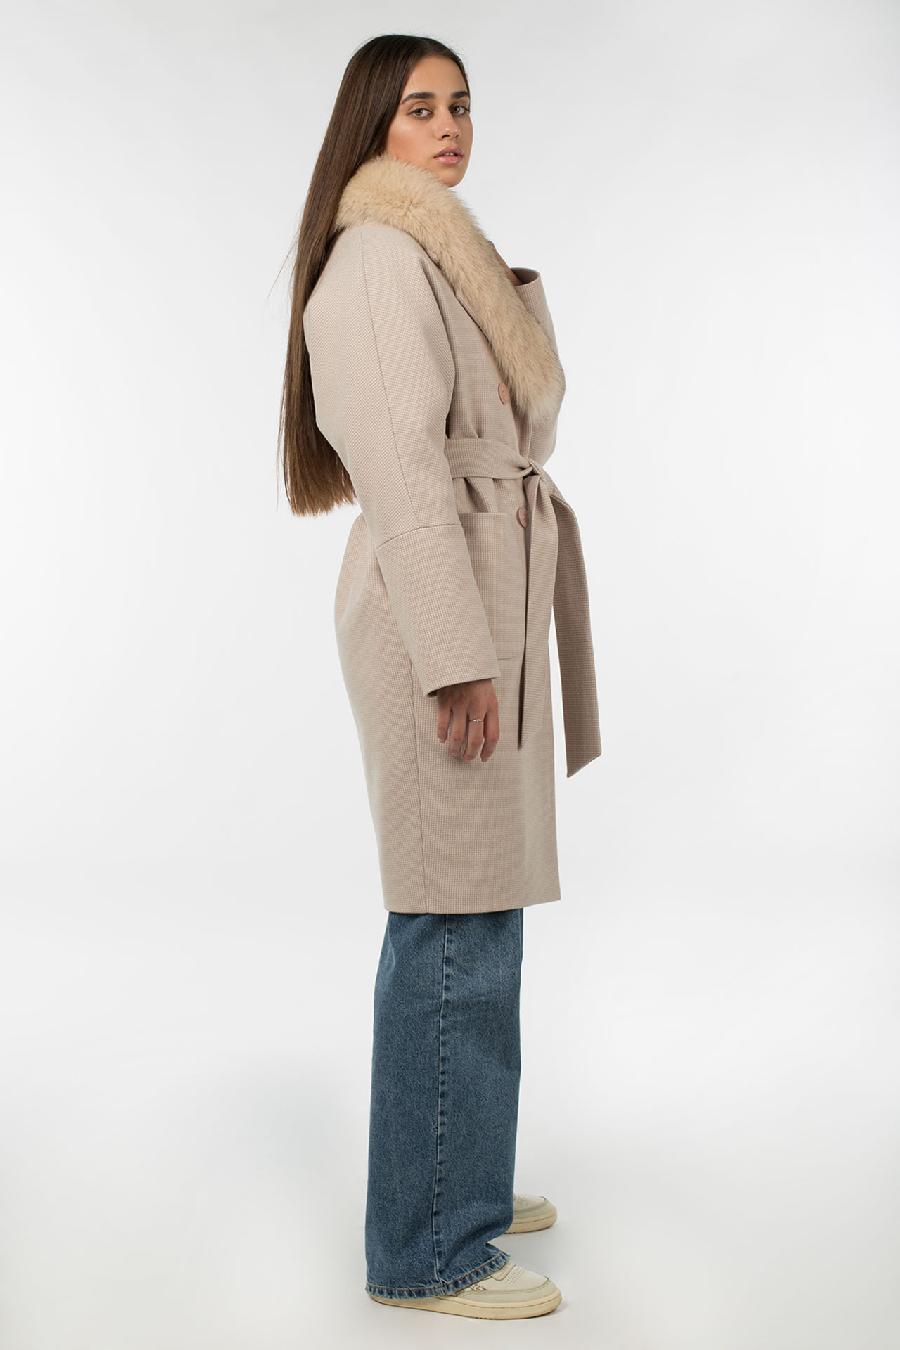 02-3061 Пальто женское утепленное (пояс) Ворса бежевый